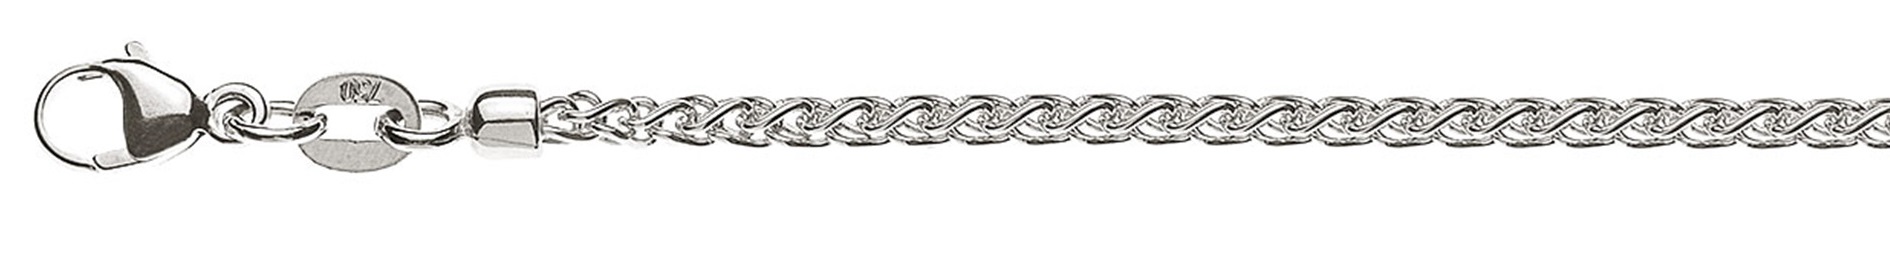 AURONOS Prestige Halskette Weissgold 18K Zopfkette 45cm 2.15mm